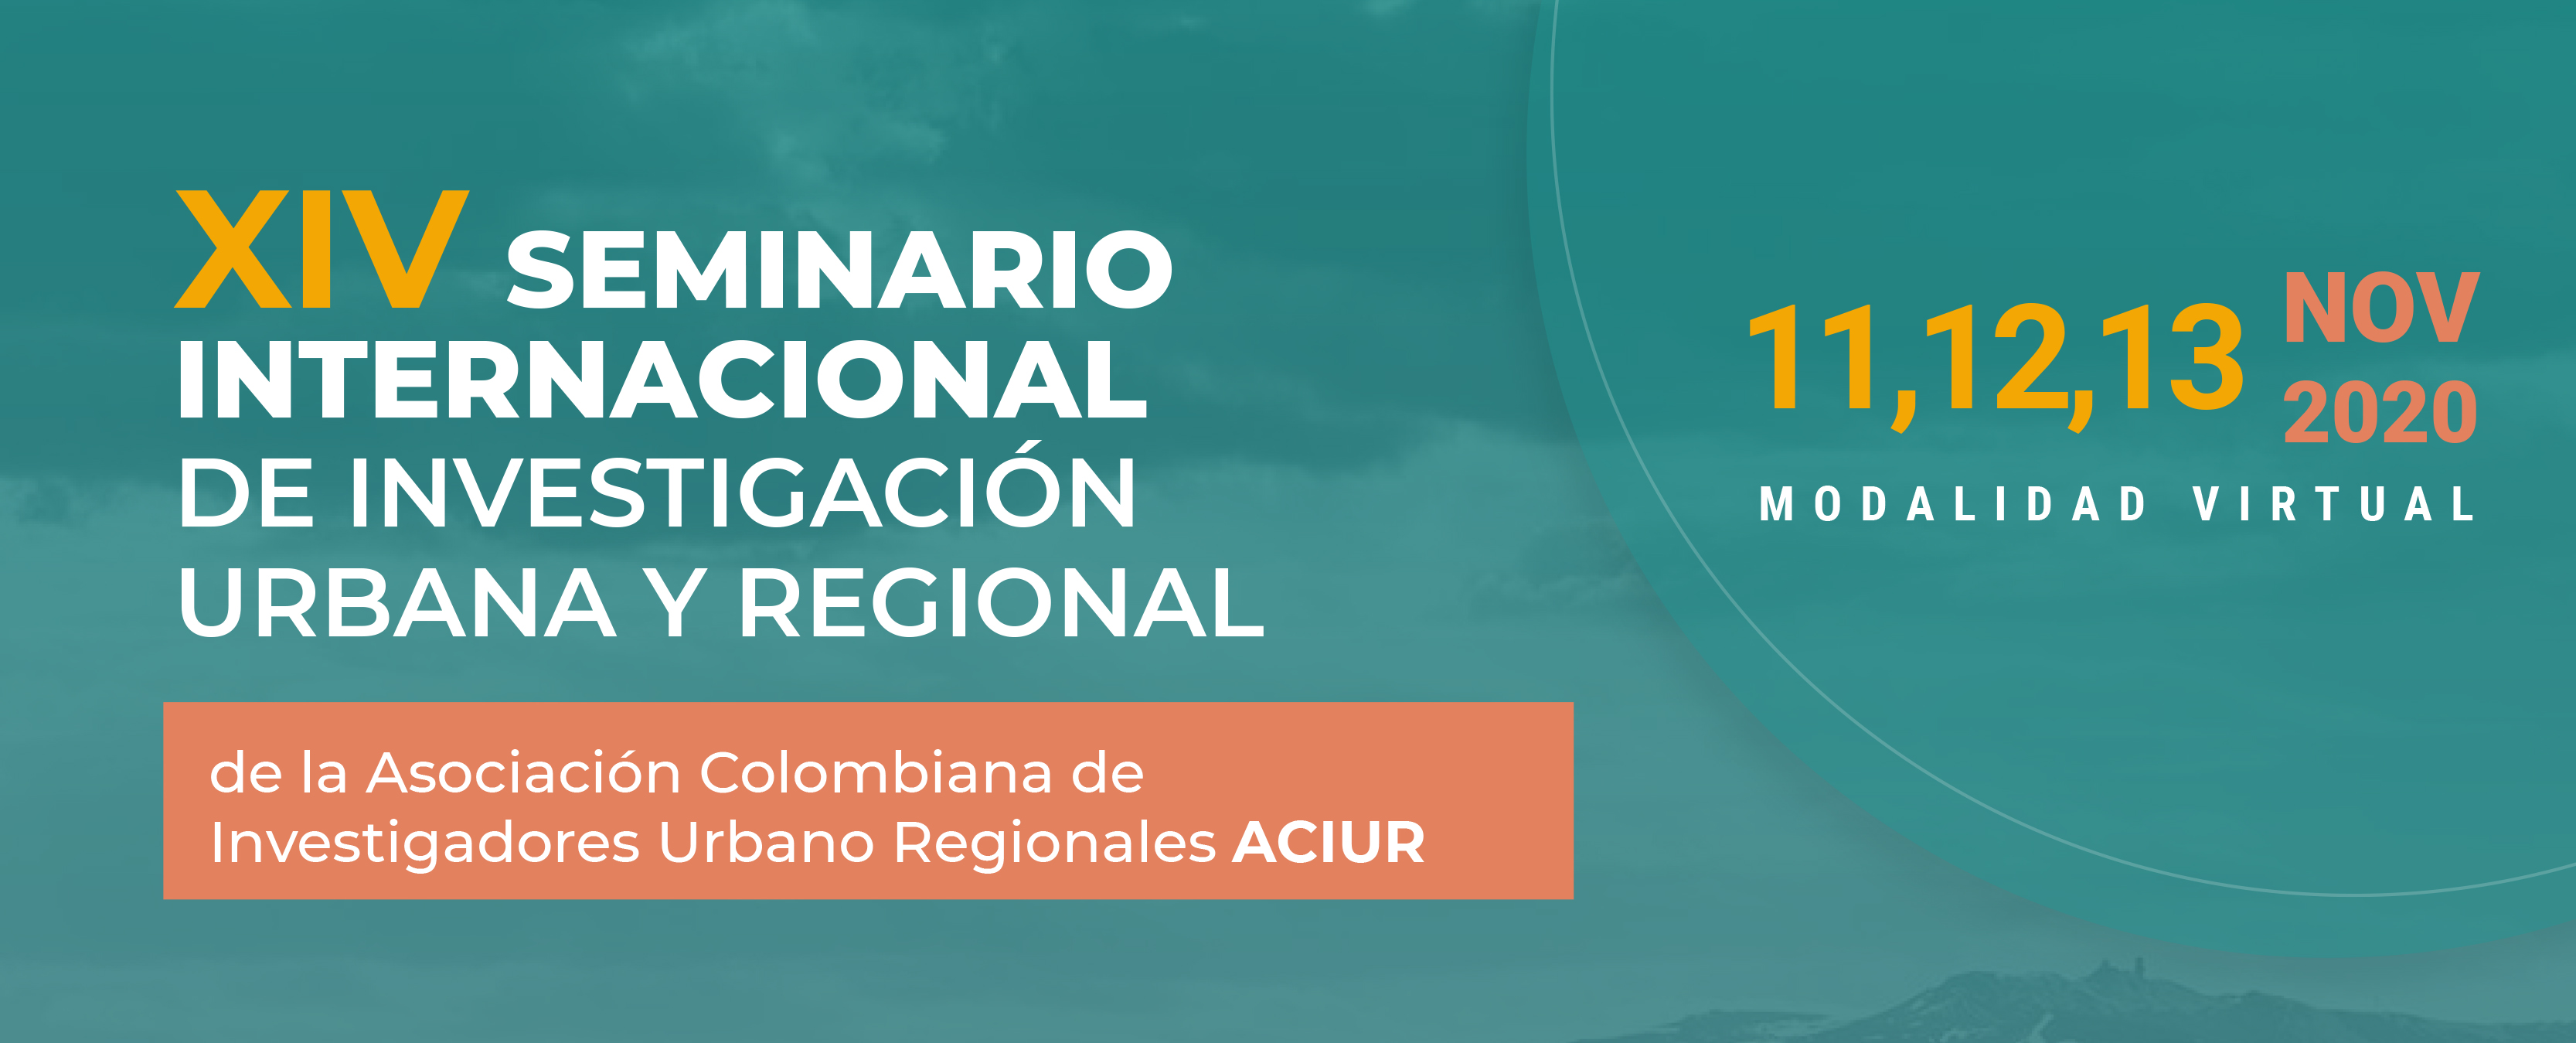 Seminario Internacional de Investigación Urbana y Regional